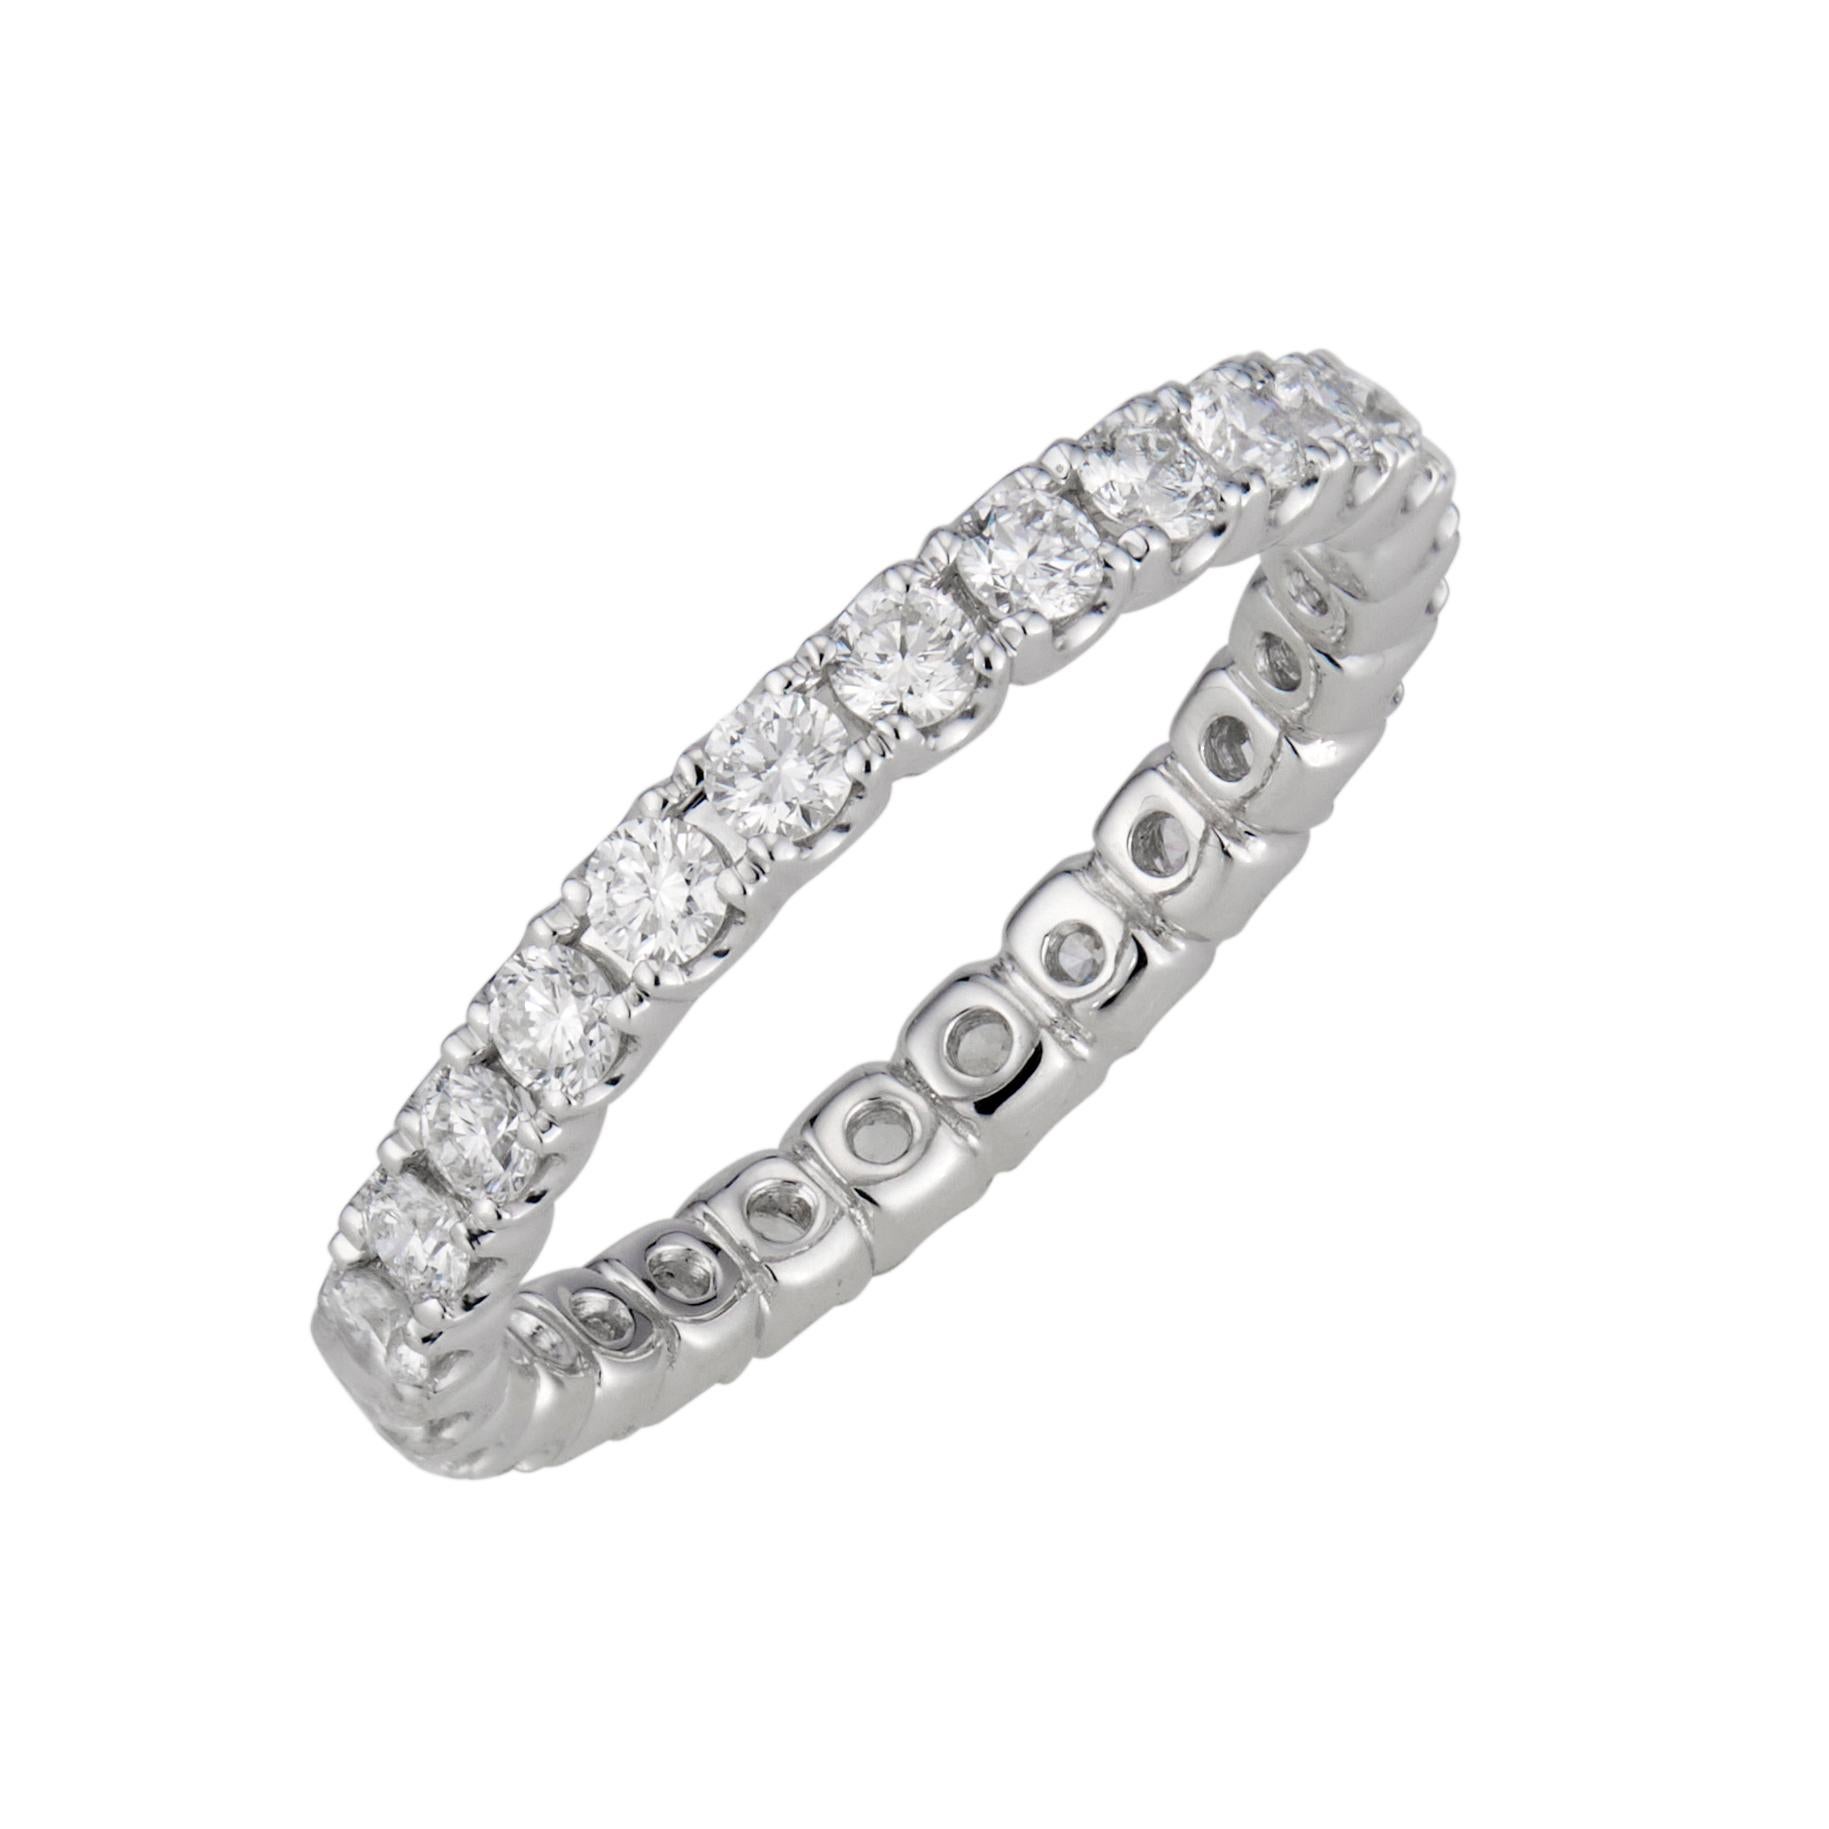 Ideal geschliffener Diamant-Ehering aus Platin für die Ewigkeit.  26 runde Diamanten im Brillantschliff.  Dieser Ring ist nicht sehr groß.  Er kann in jeder Größe und aus jedem Metall bestellt werden. Entworfen und hergestellt in der Werkstatt von